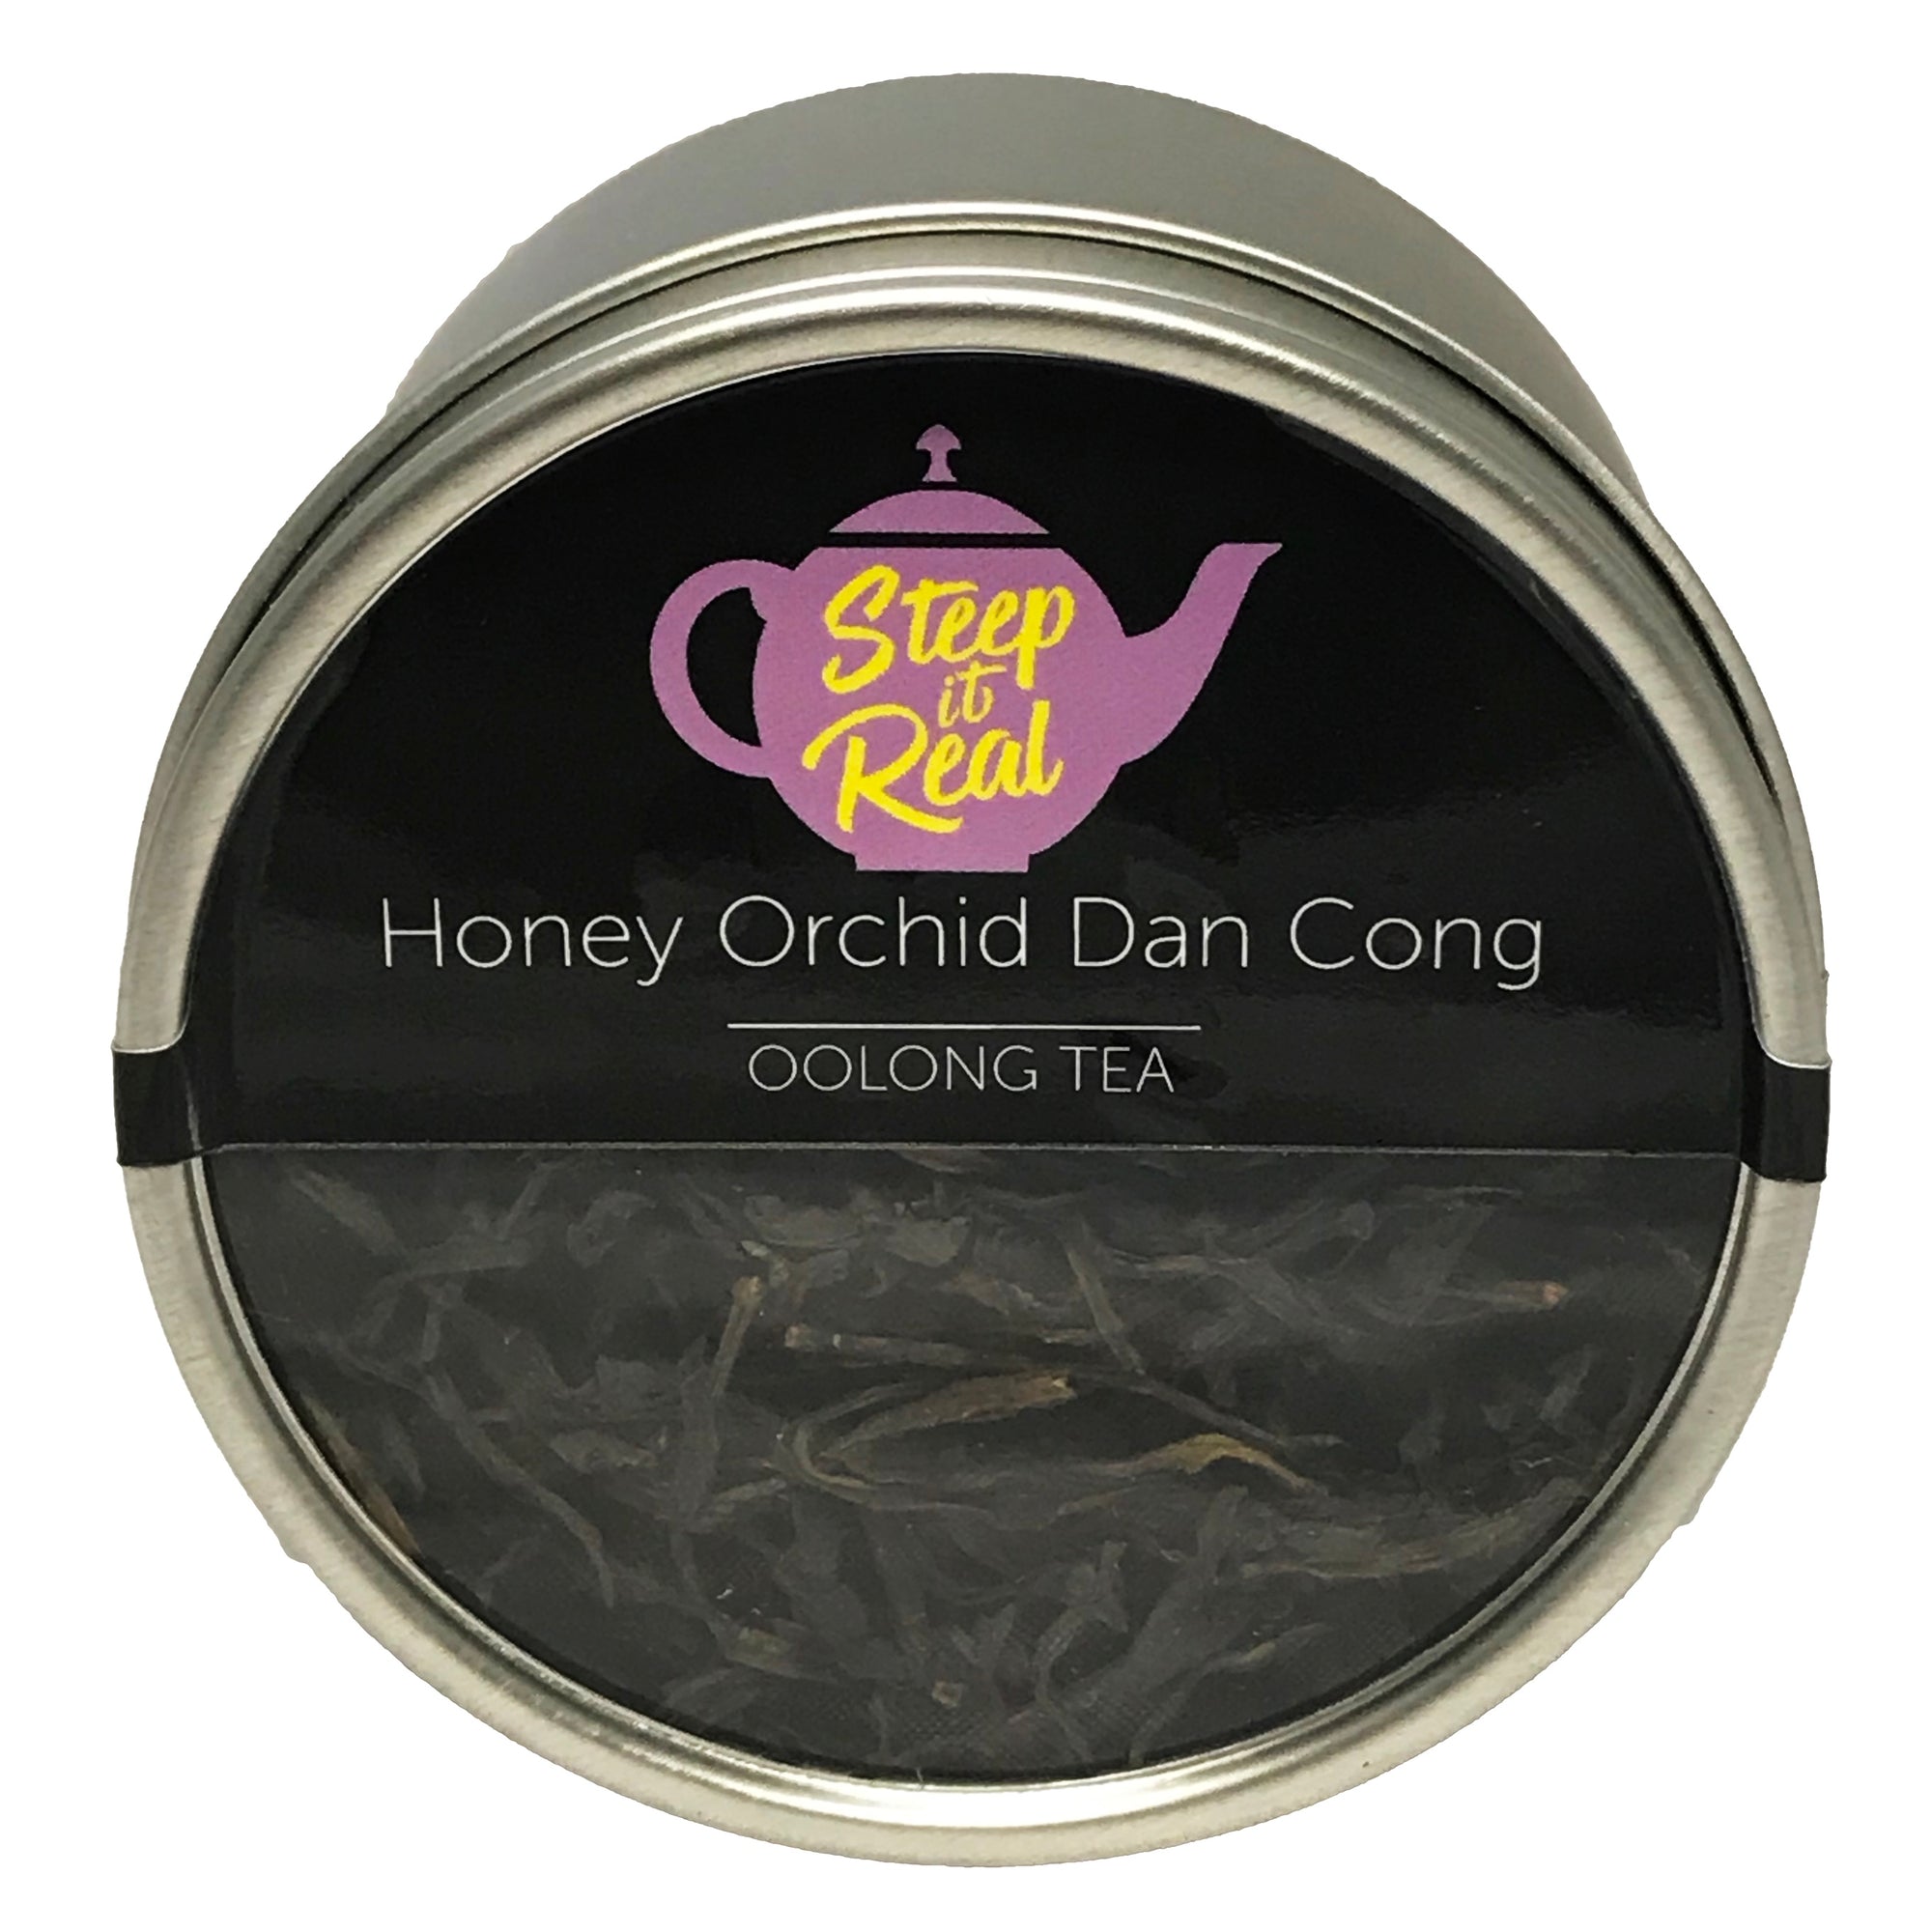 Honey Orchid Dan Cong - I Have a Bean